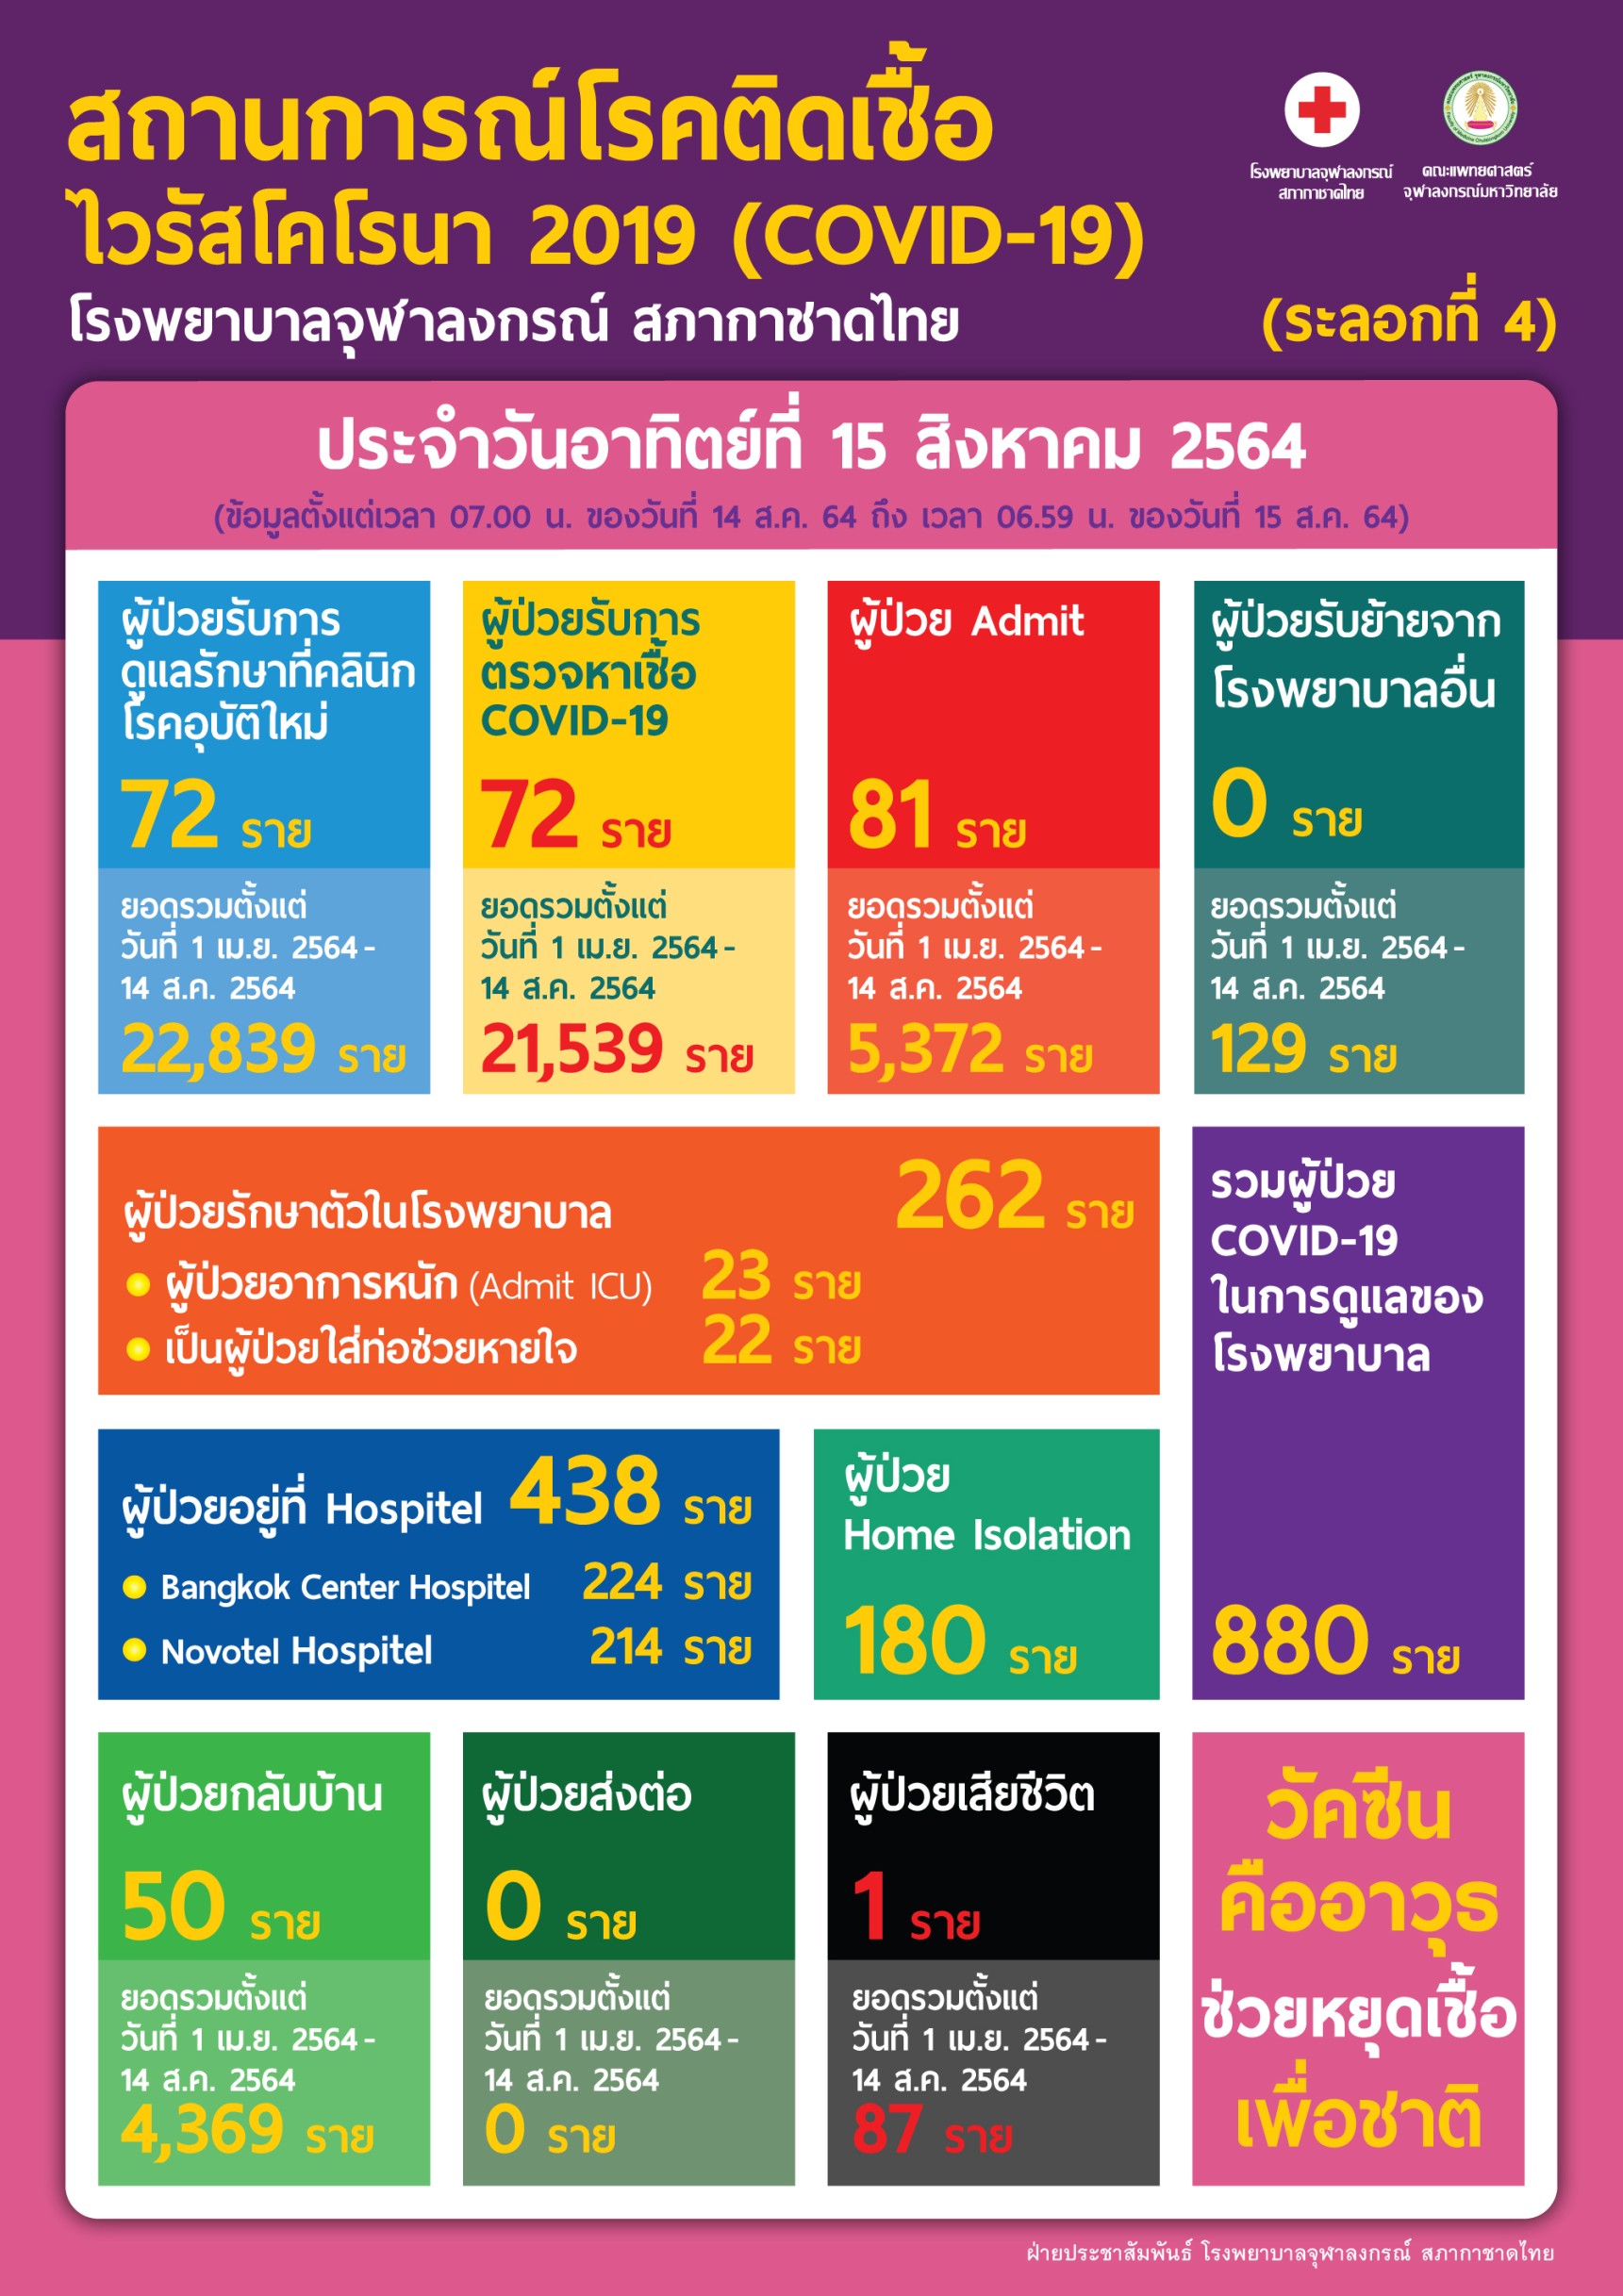 สถานการณ์โรคติดเชื้อไวรัสโคโรนา 2019 (COVID-19) (ระลอกที่ 4)  โรงพยาบาลจุฬาลงกรณ์ สภากาชาดไทย ประจำวันอาทิตย์ที่ 15 สิงหาคม 2564